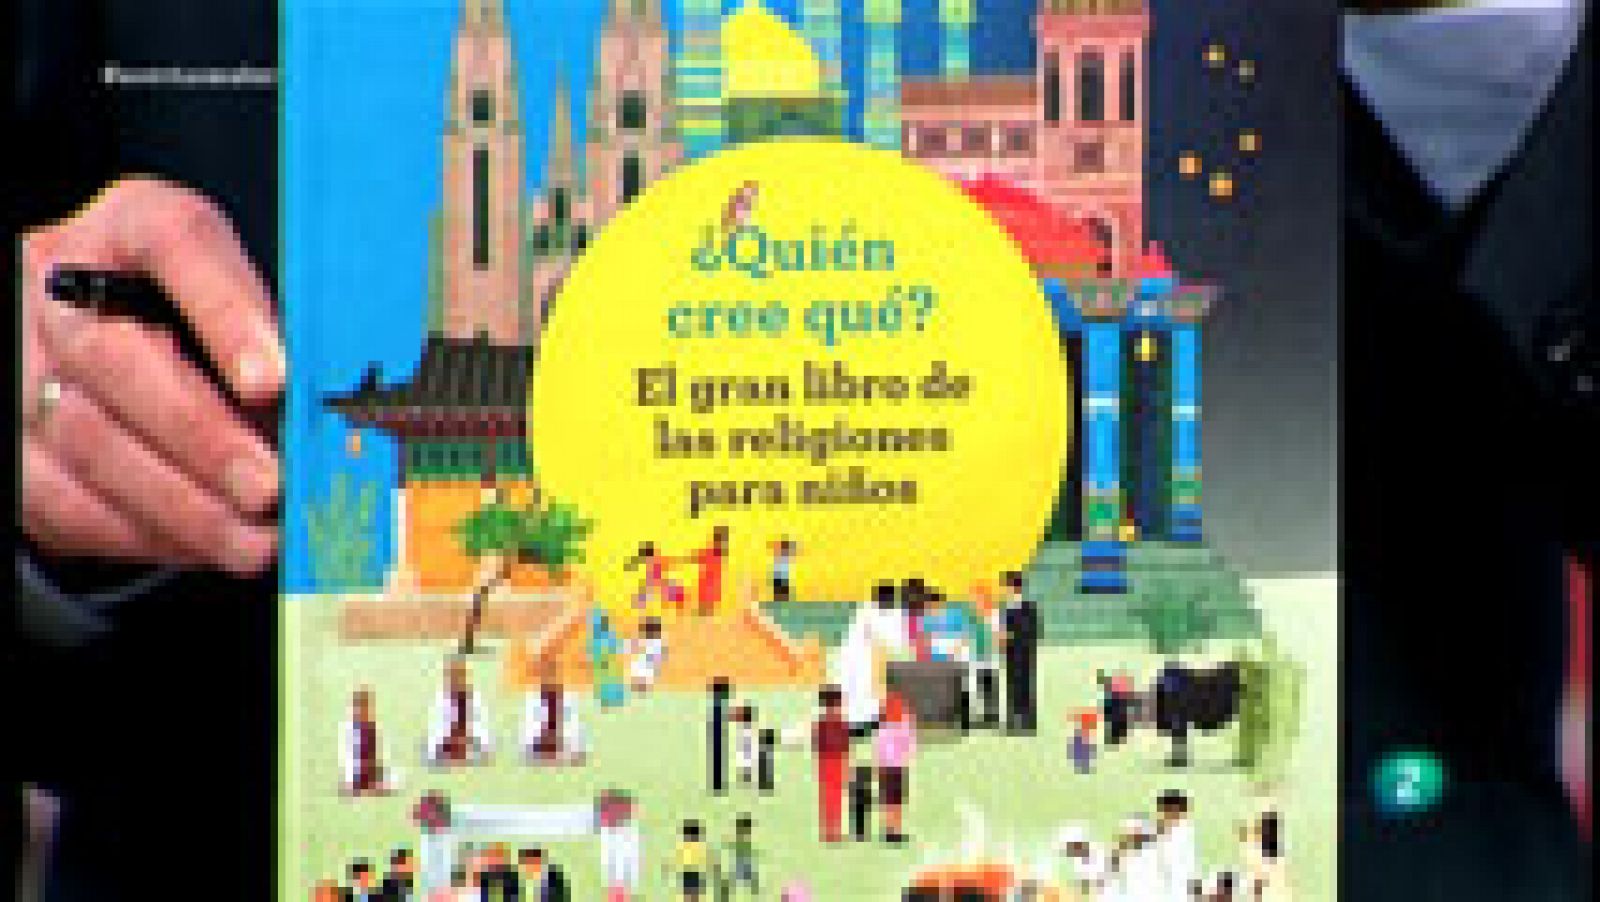 La aventura del Saber: ¿Quién cree qué? El gran libro de las religiones para niños | RTVE Play